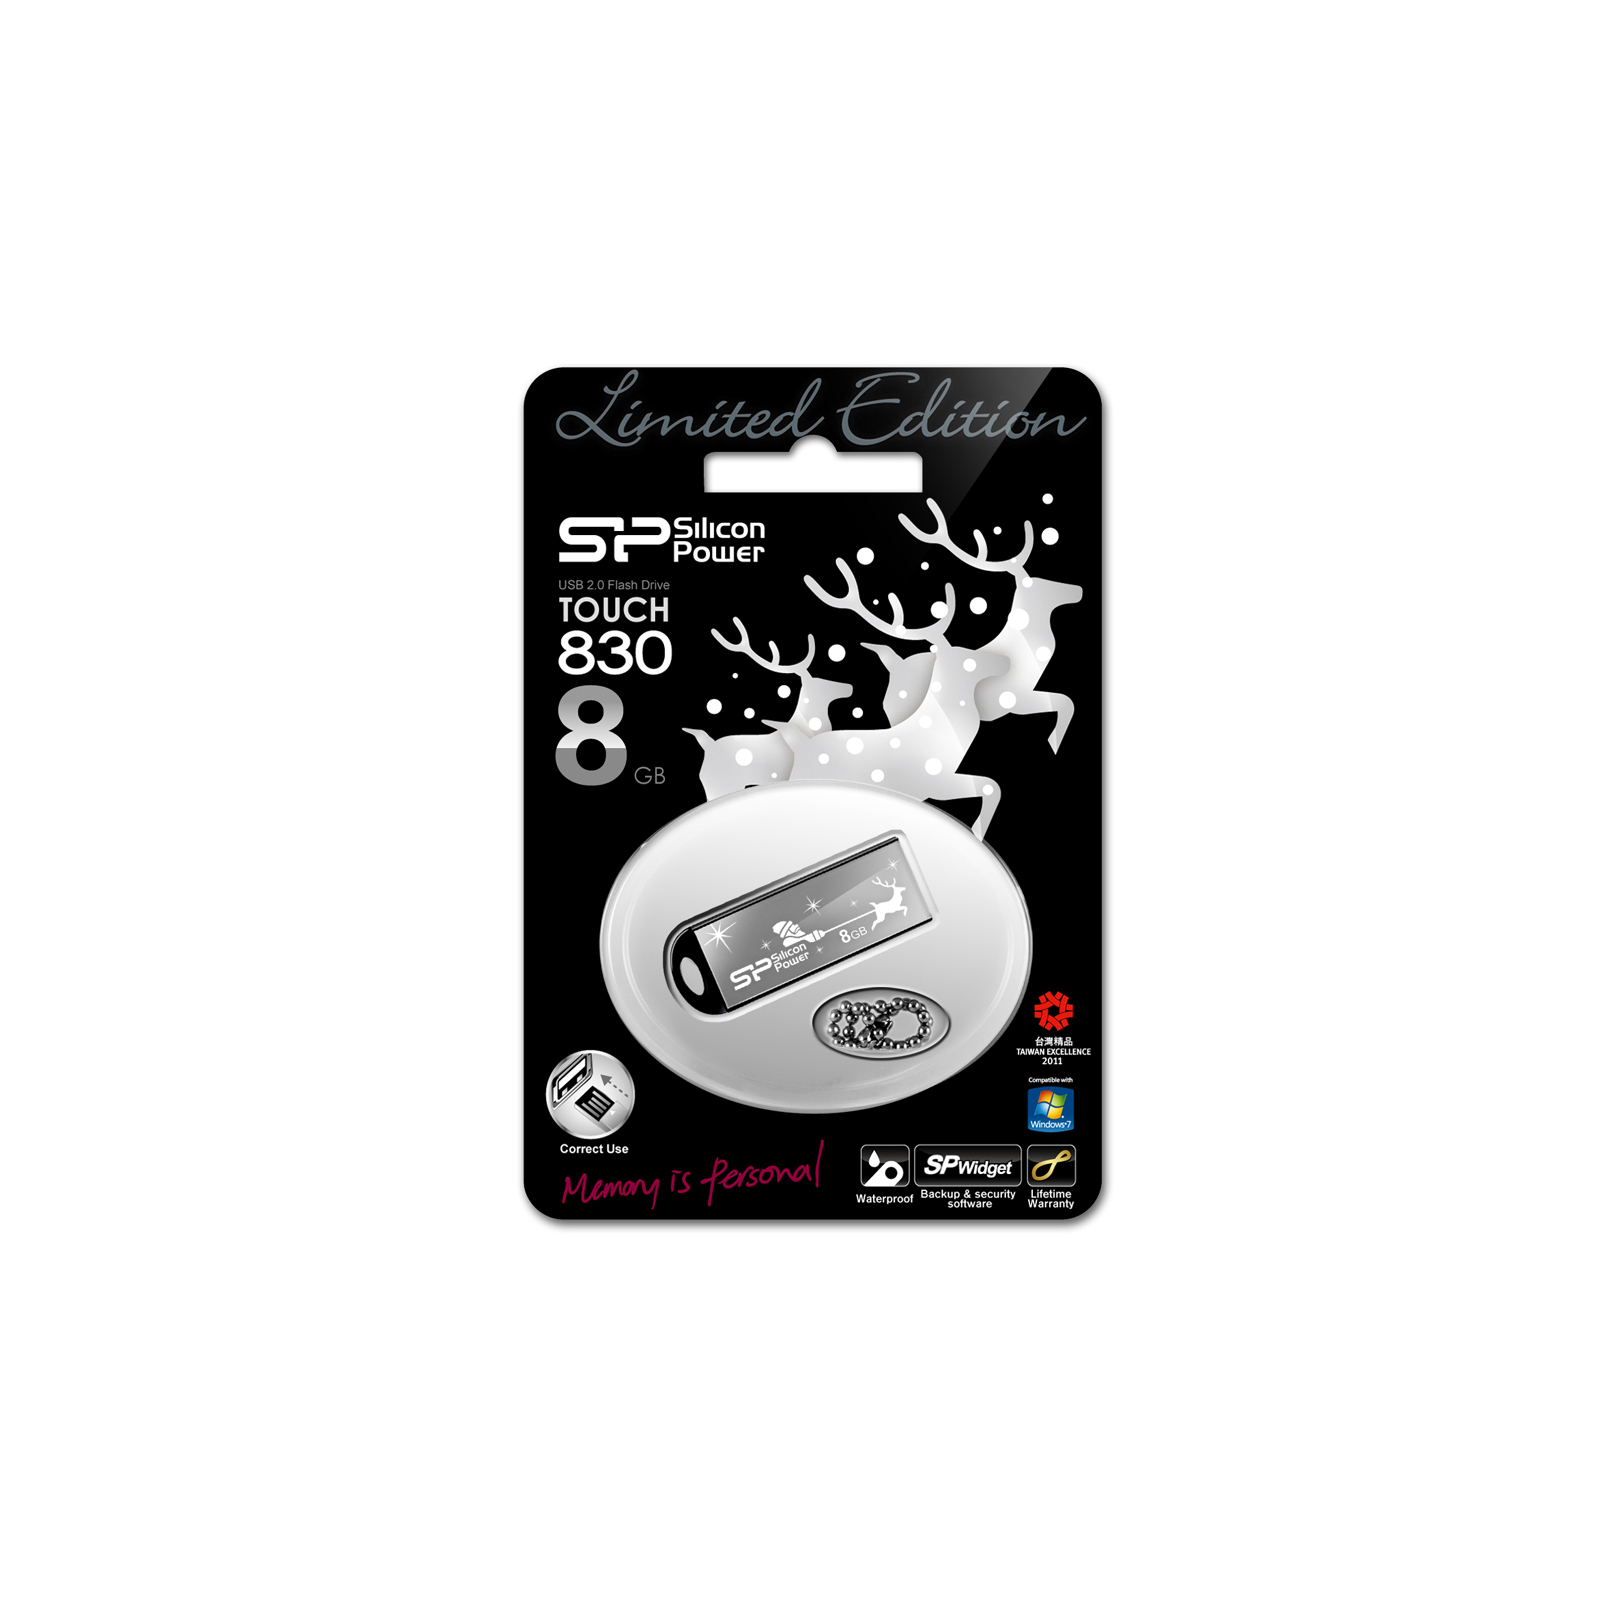 USB флеш накопичувач Silicon Power 8Gb Touch 830 black santa edition (SP008GBUF2830V1K-LE) зображення 3